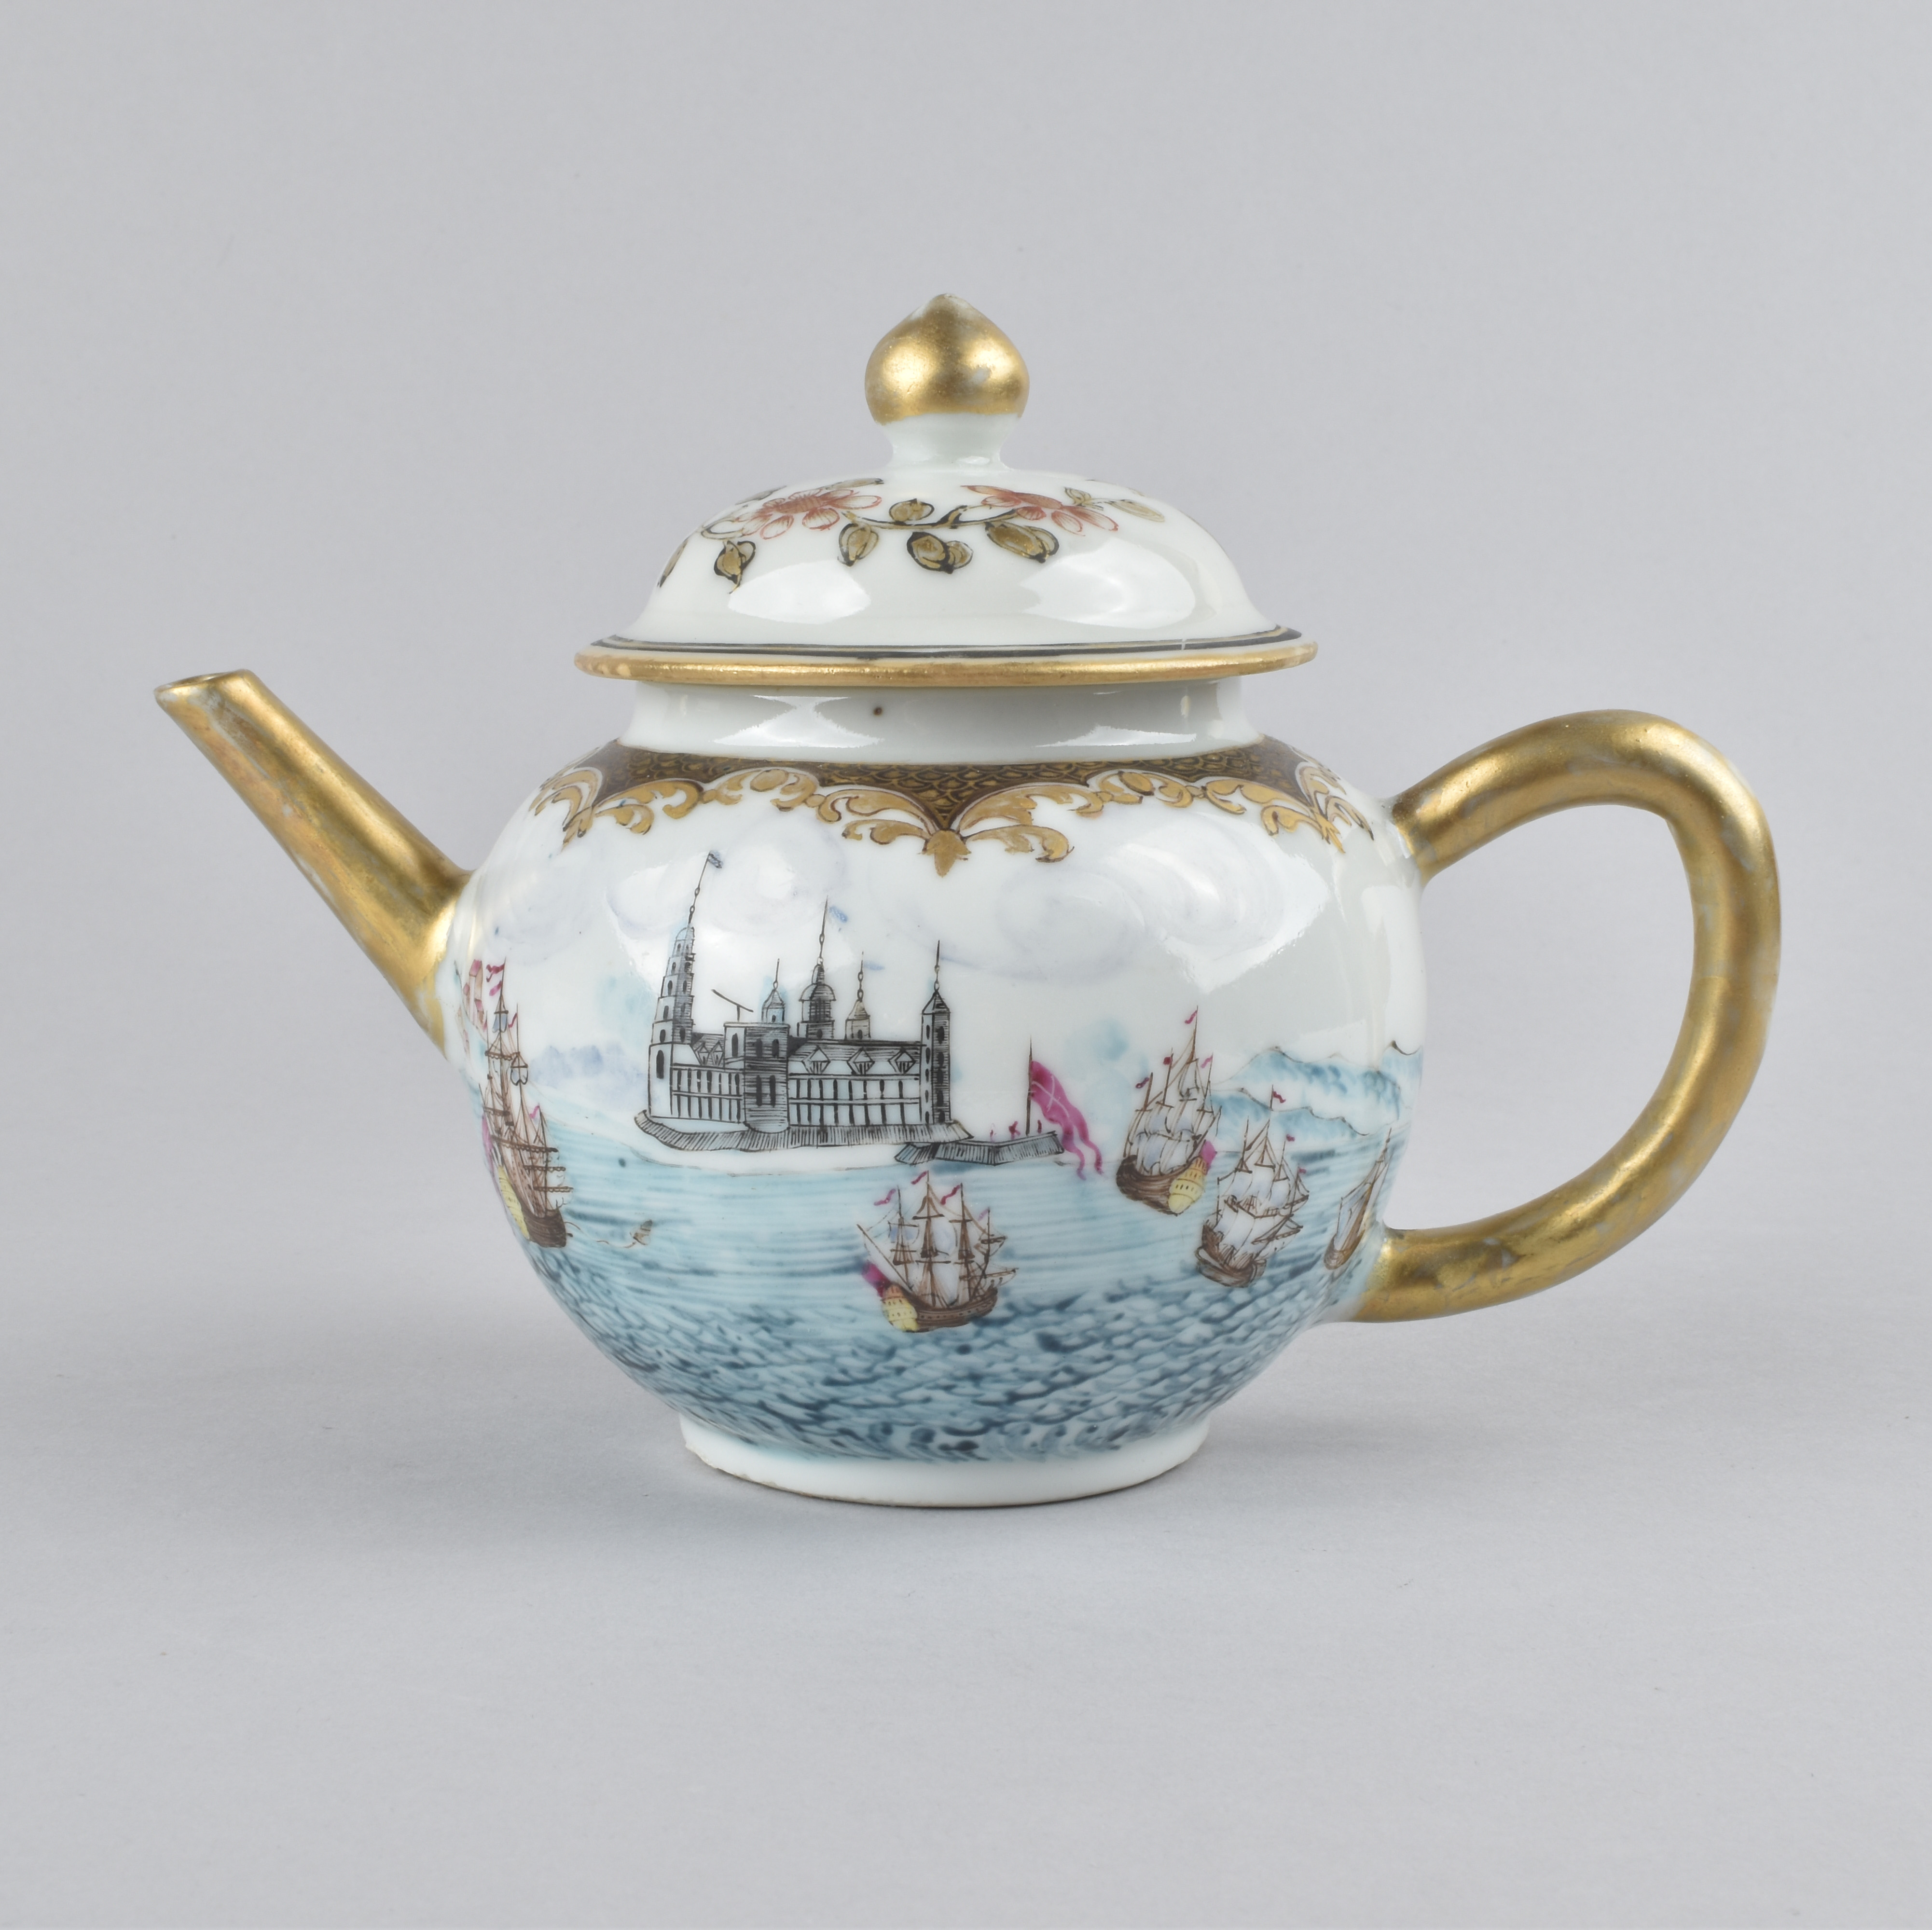 Porcelain Yongzheng period (1736-1795), ca. 1730/1740, China